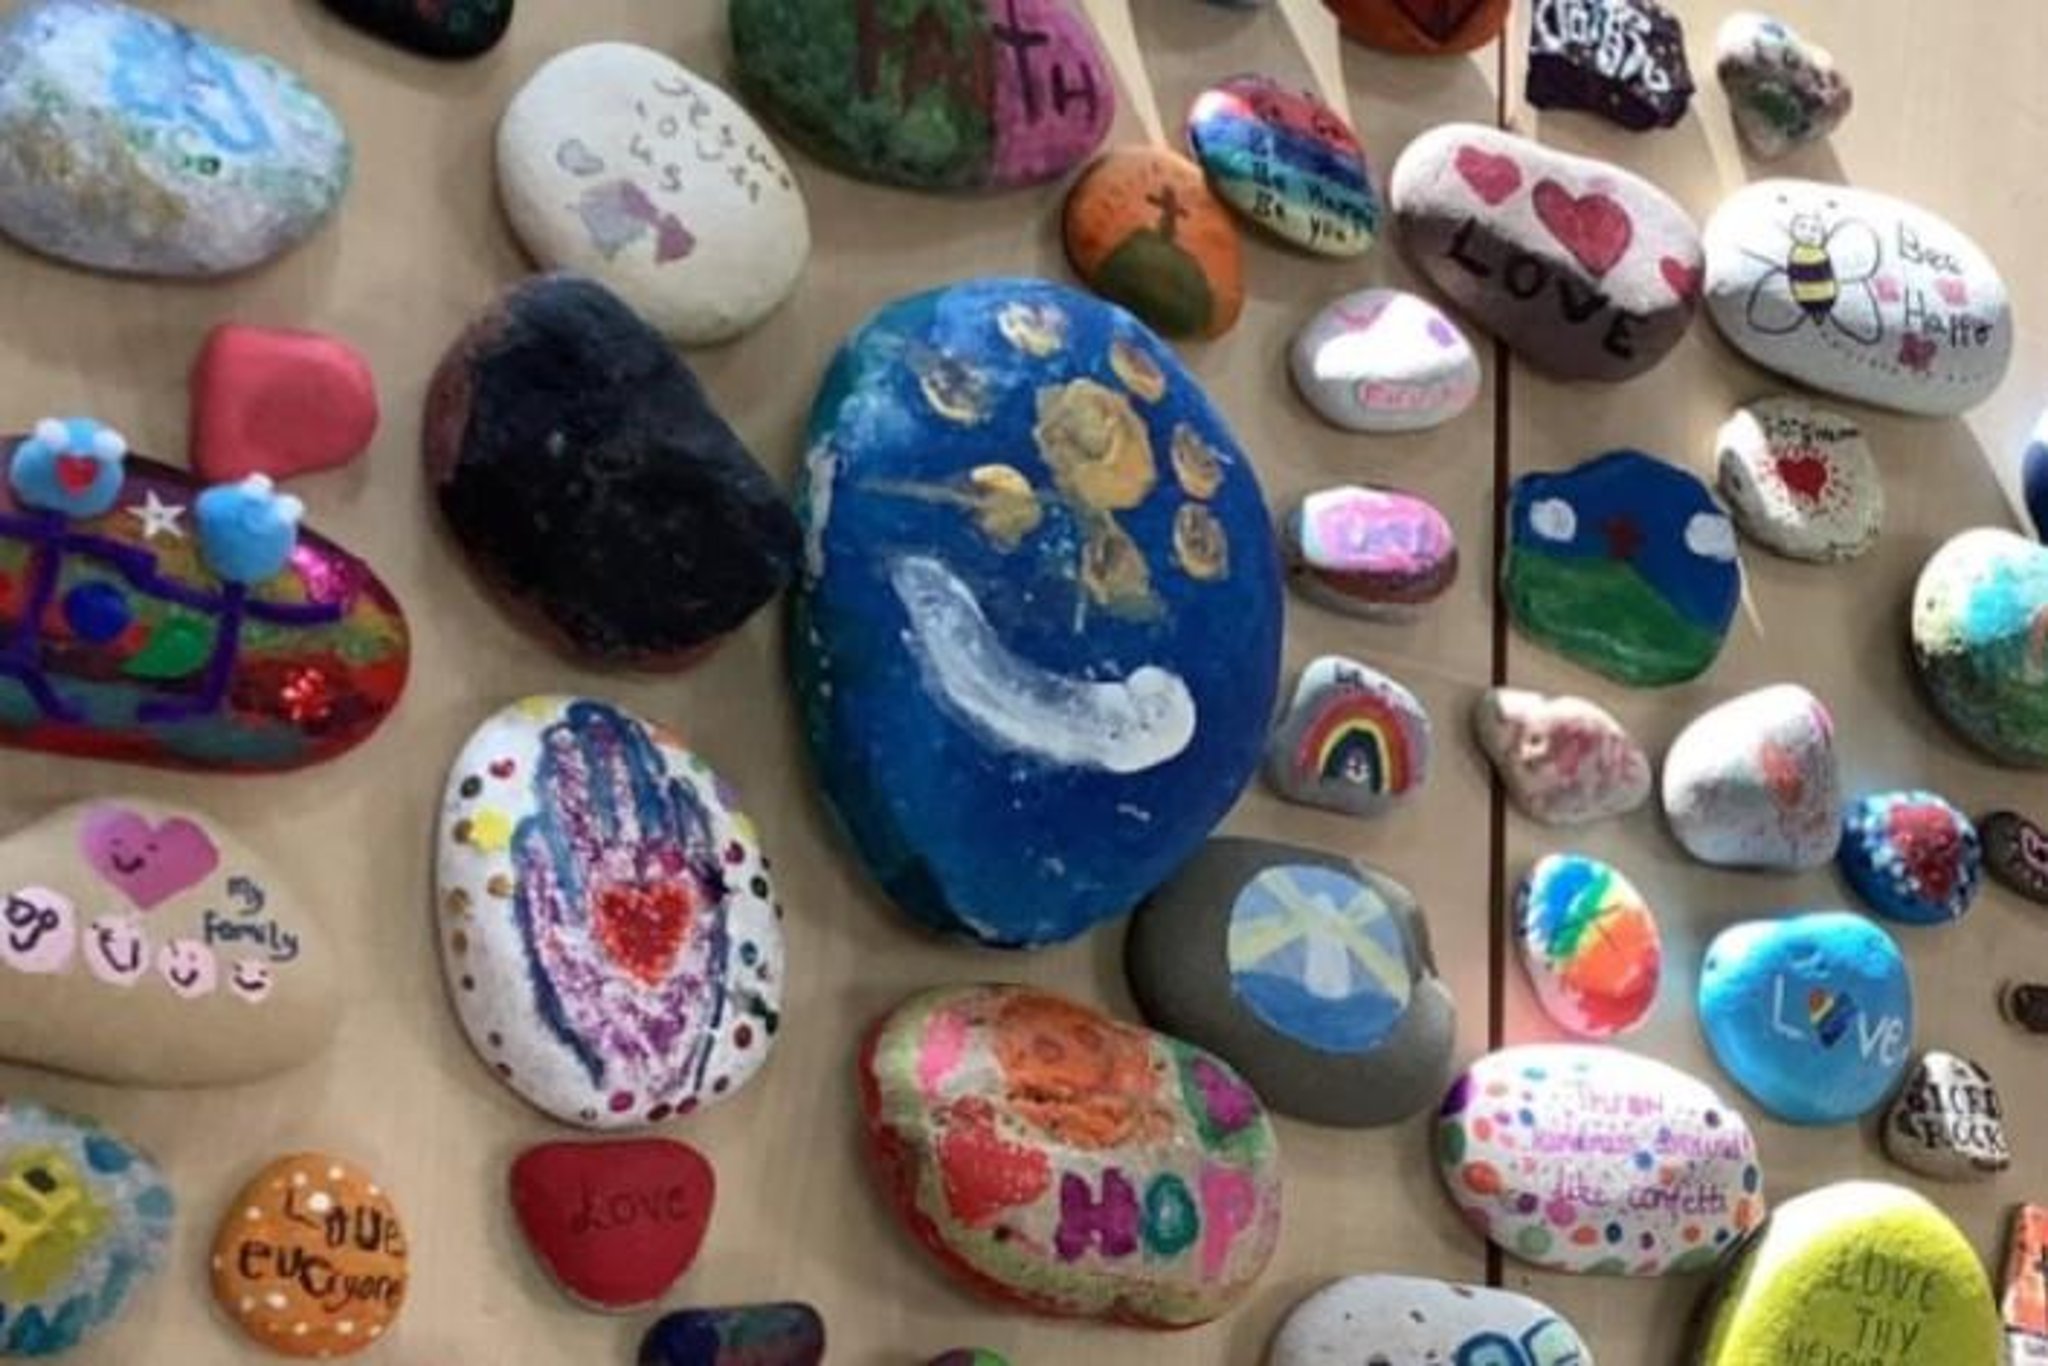 Niños decoran piedras con mensajes que promueven la salud mental positiva